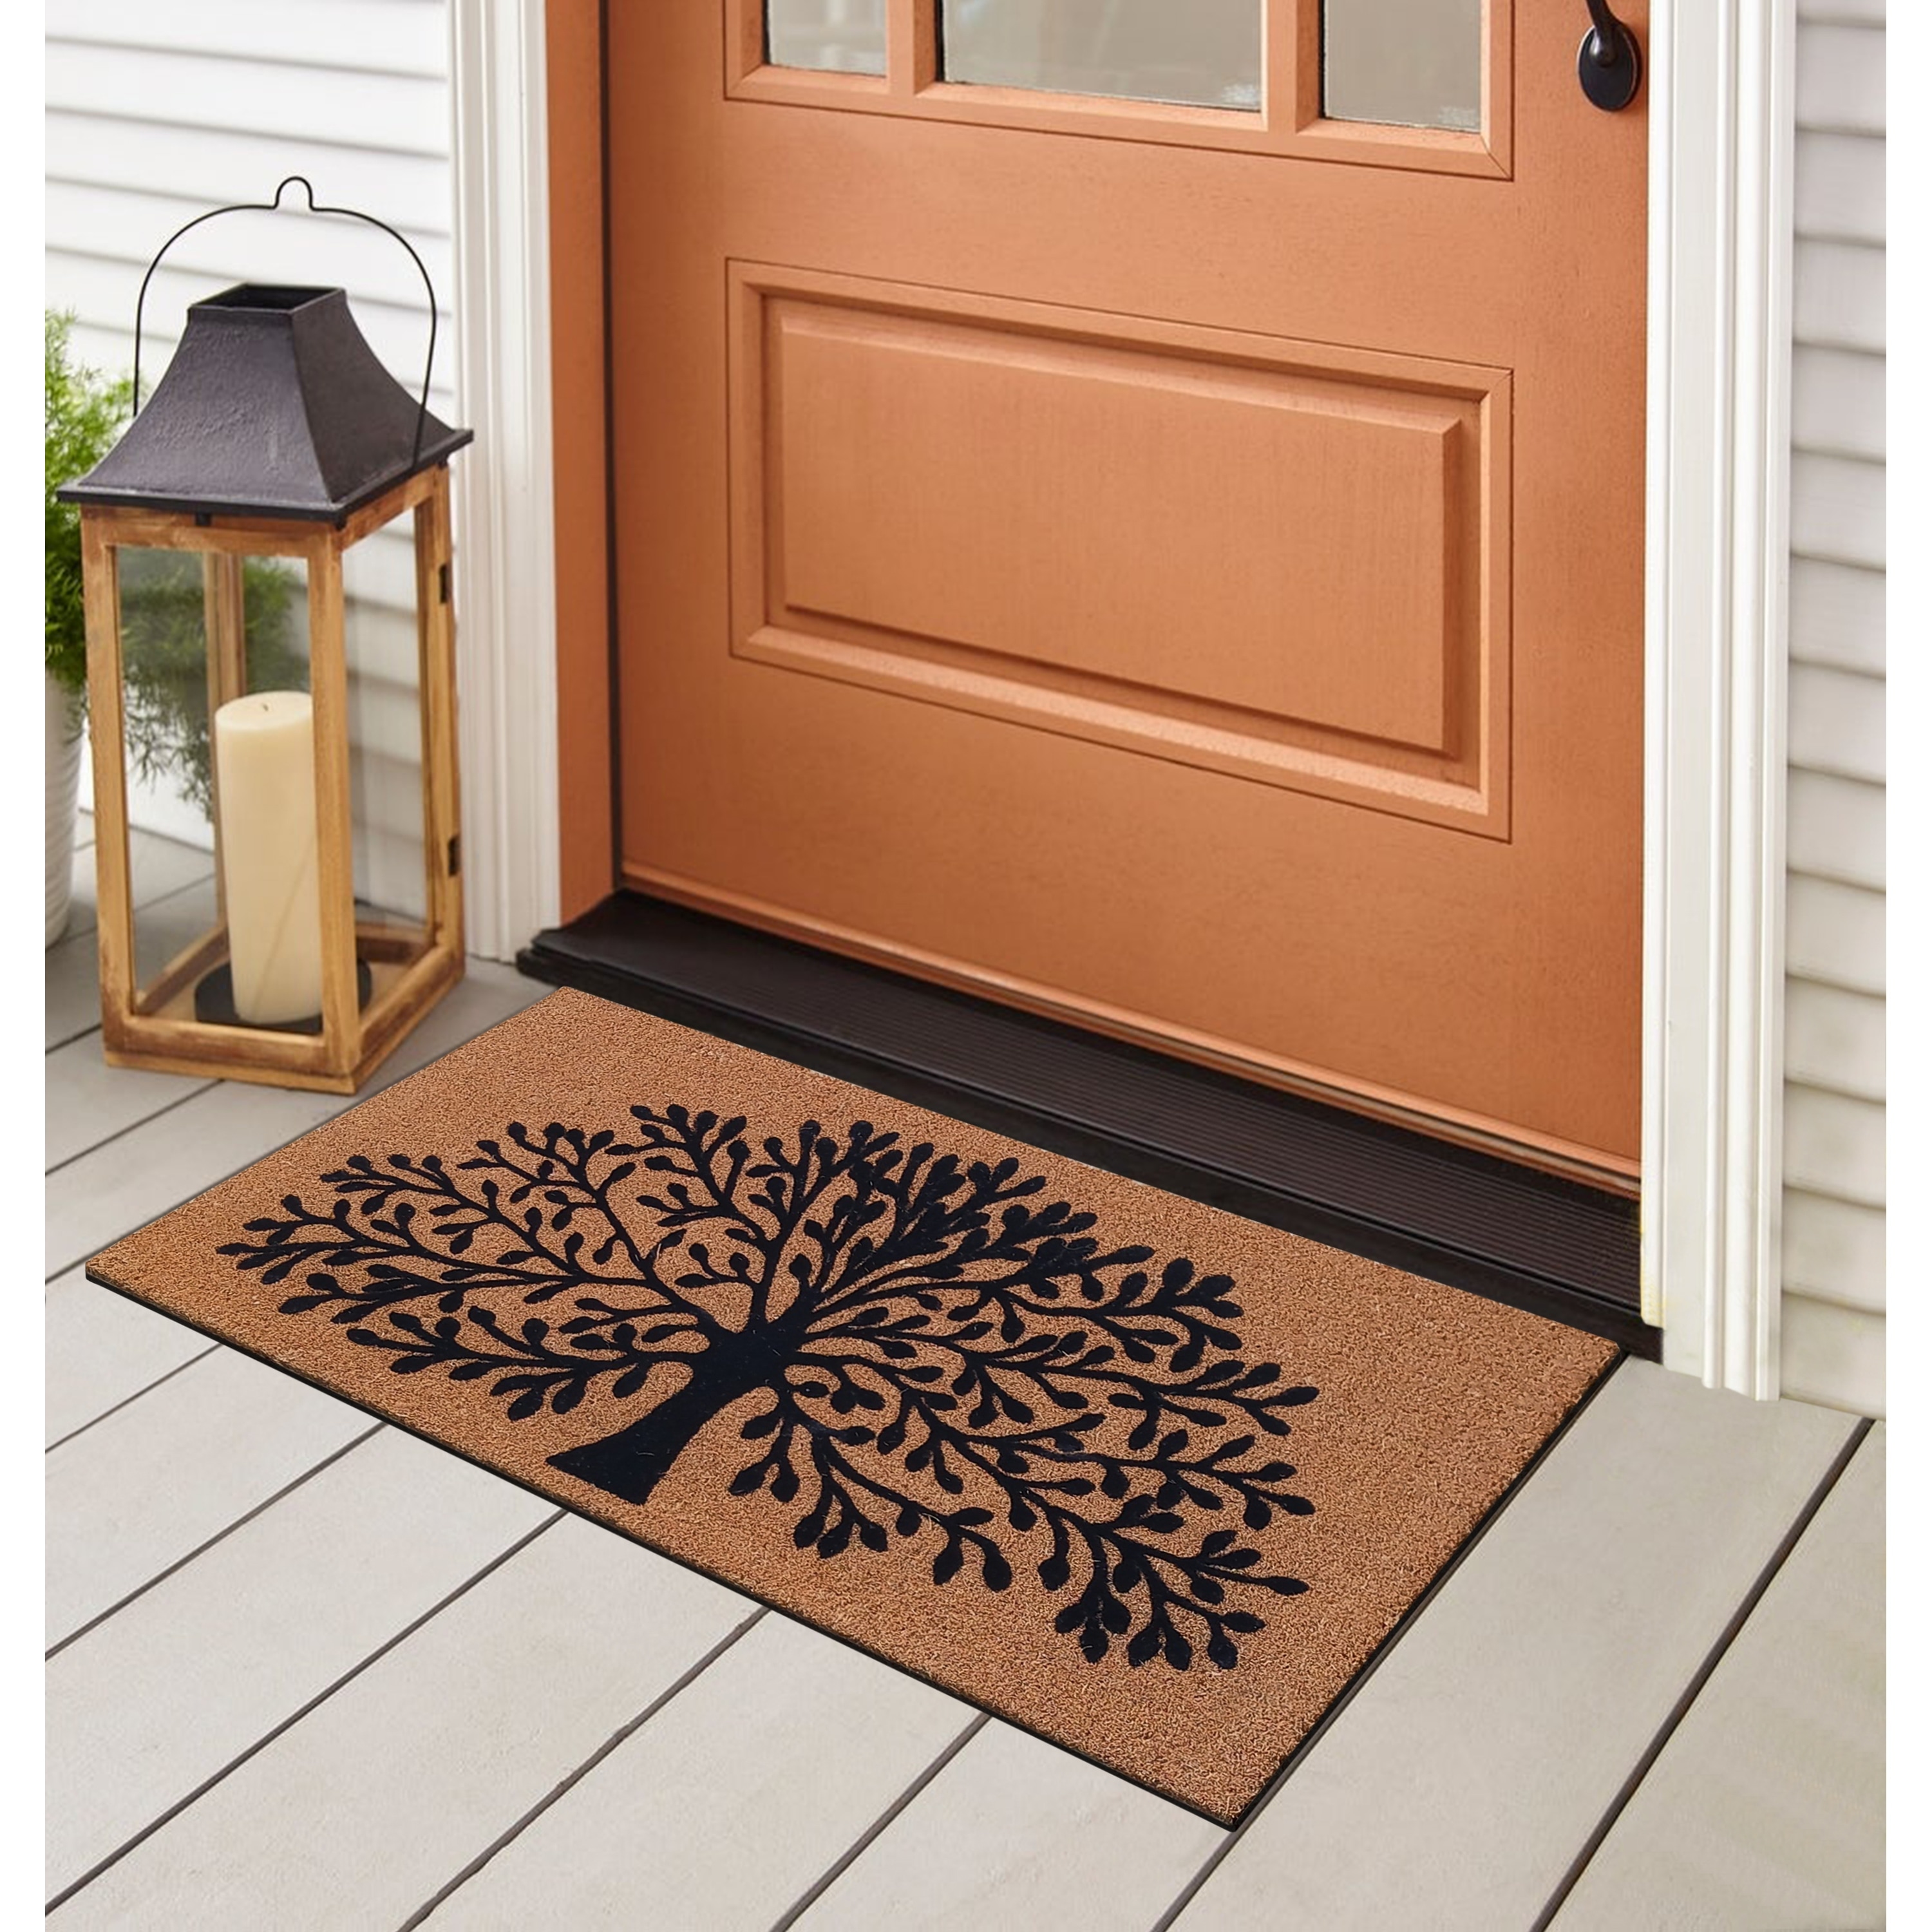 Oakeep Door Mats Outdoor Front Door Mat Outside Entry Doormats Home Entrance Floor Back Door Waterproof Entryway Rug Non Slip Heavy Dut